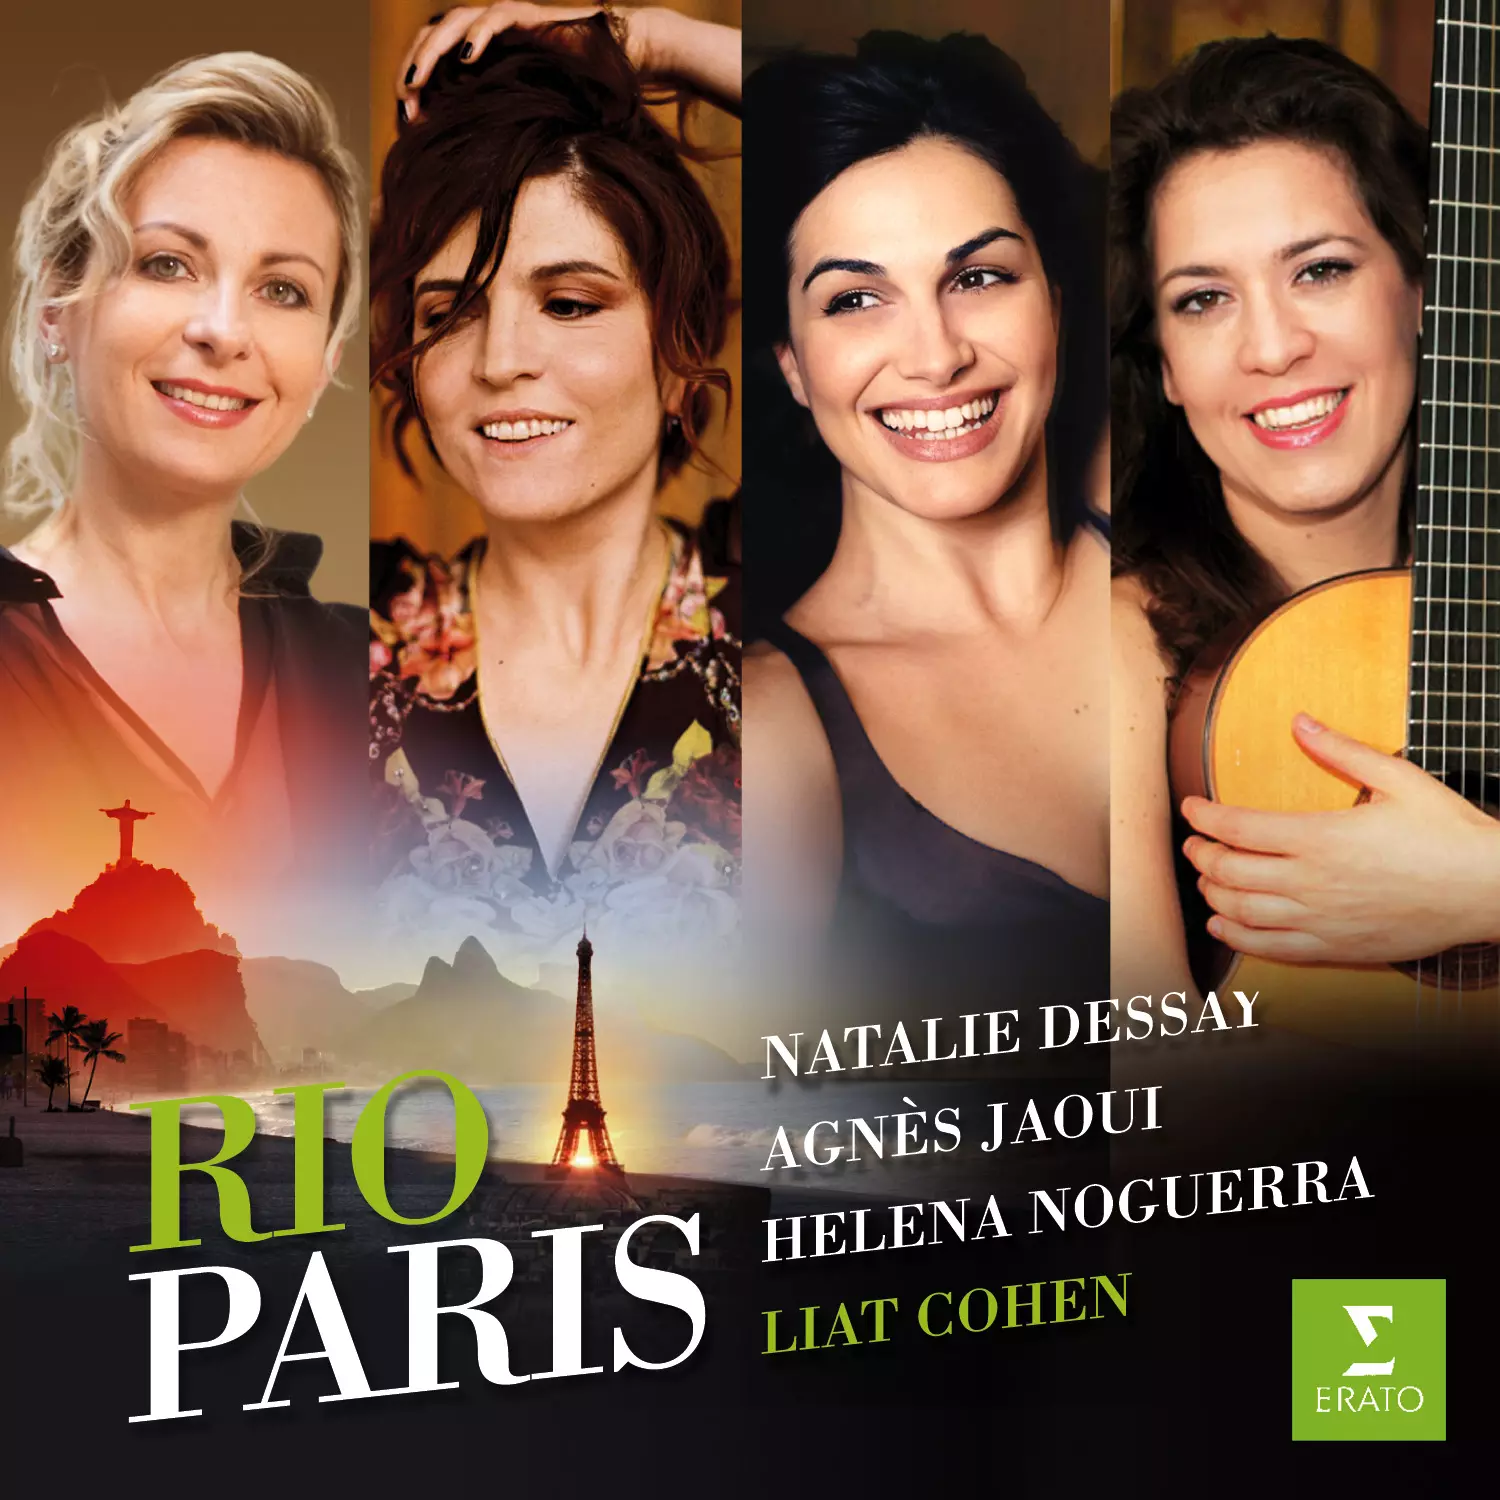 Rio-Paris - Natalie Dessay, Agnès Jaoui, Helena Noguerra, Liat Cohen